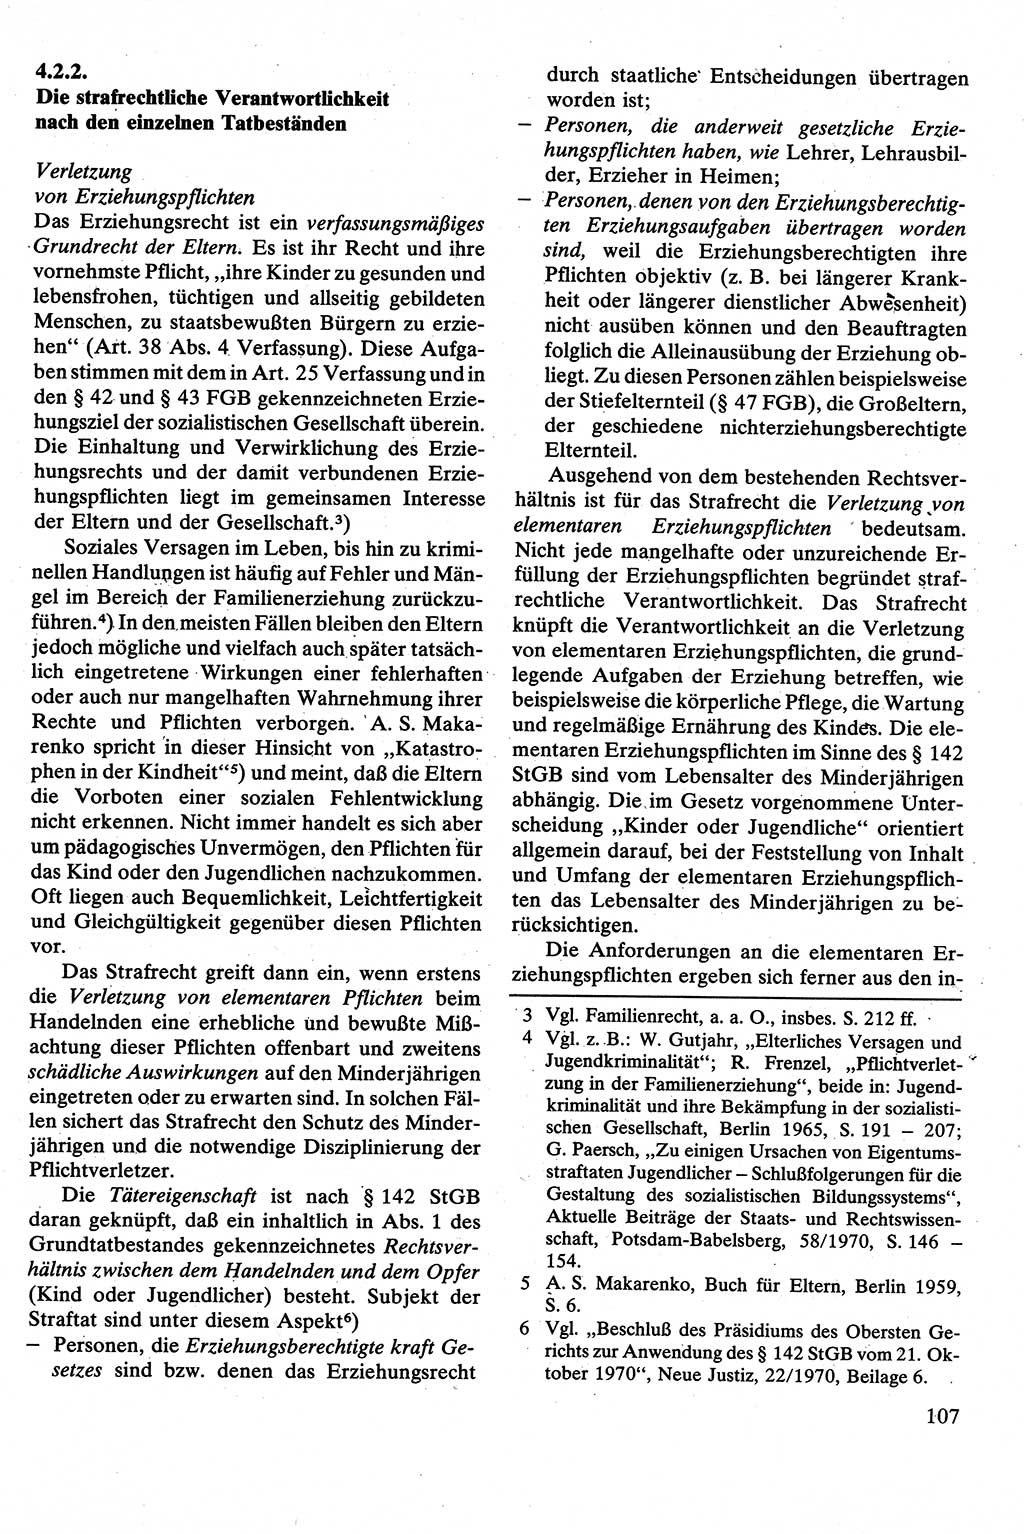 Strafrecht [Deutsche Demokratische Republik (DDR)], Besonderer Teil, Lehrbuch 1981, Seite 107 (Strafr. DDR BT Lb. 1981, S. 107)